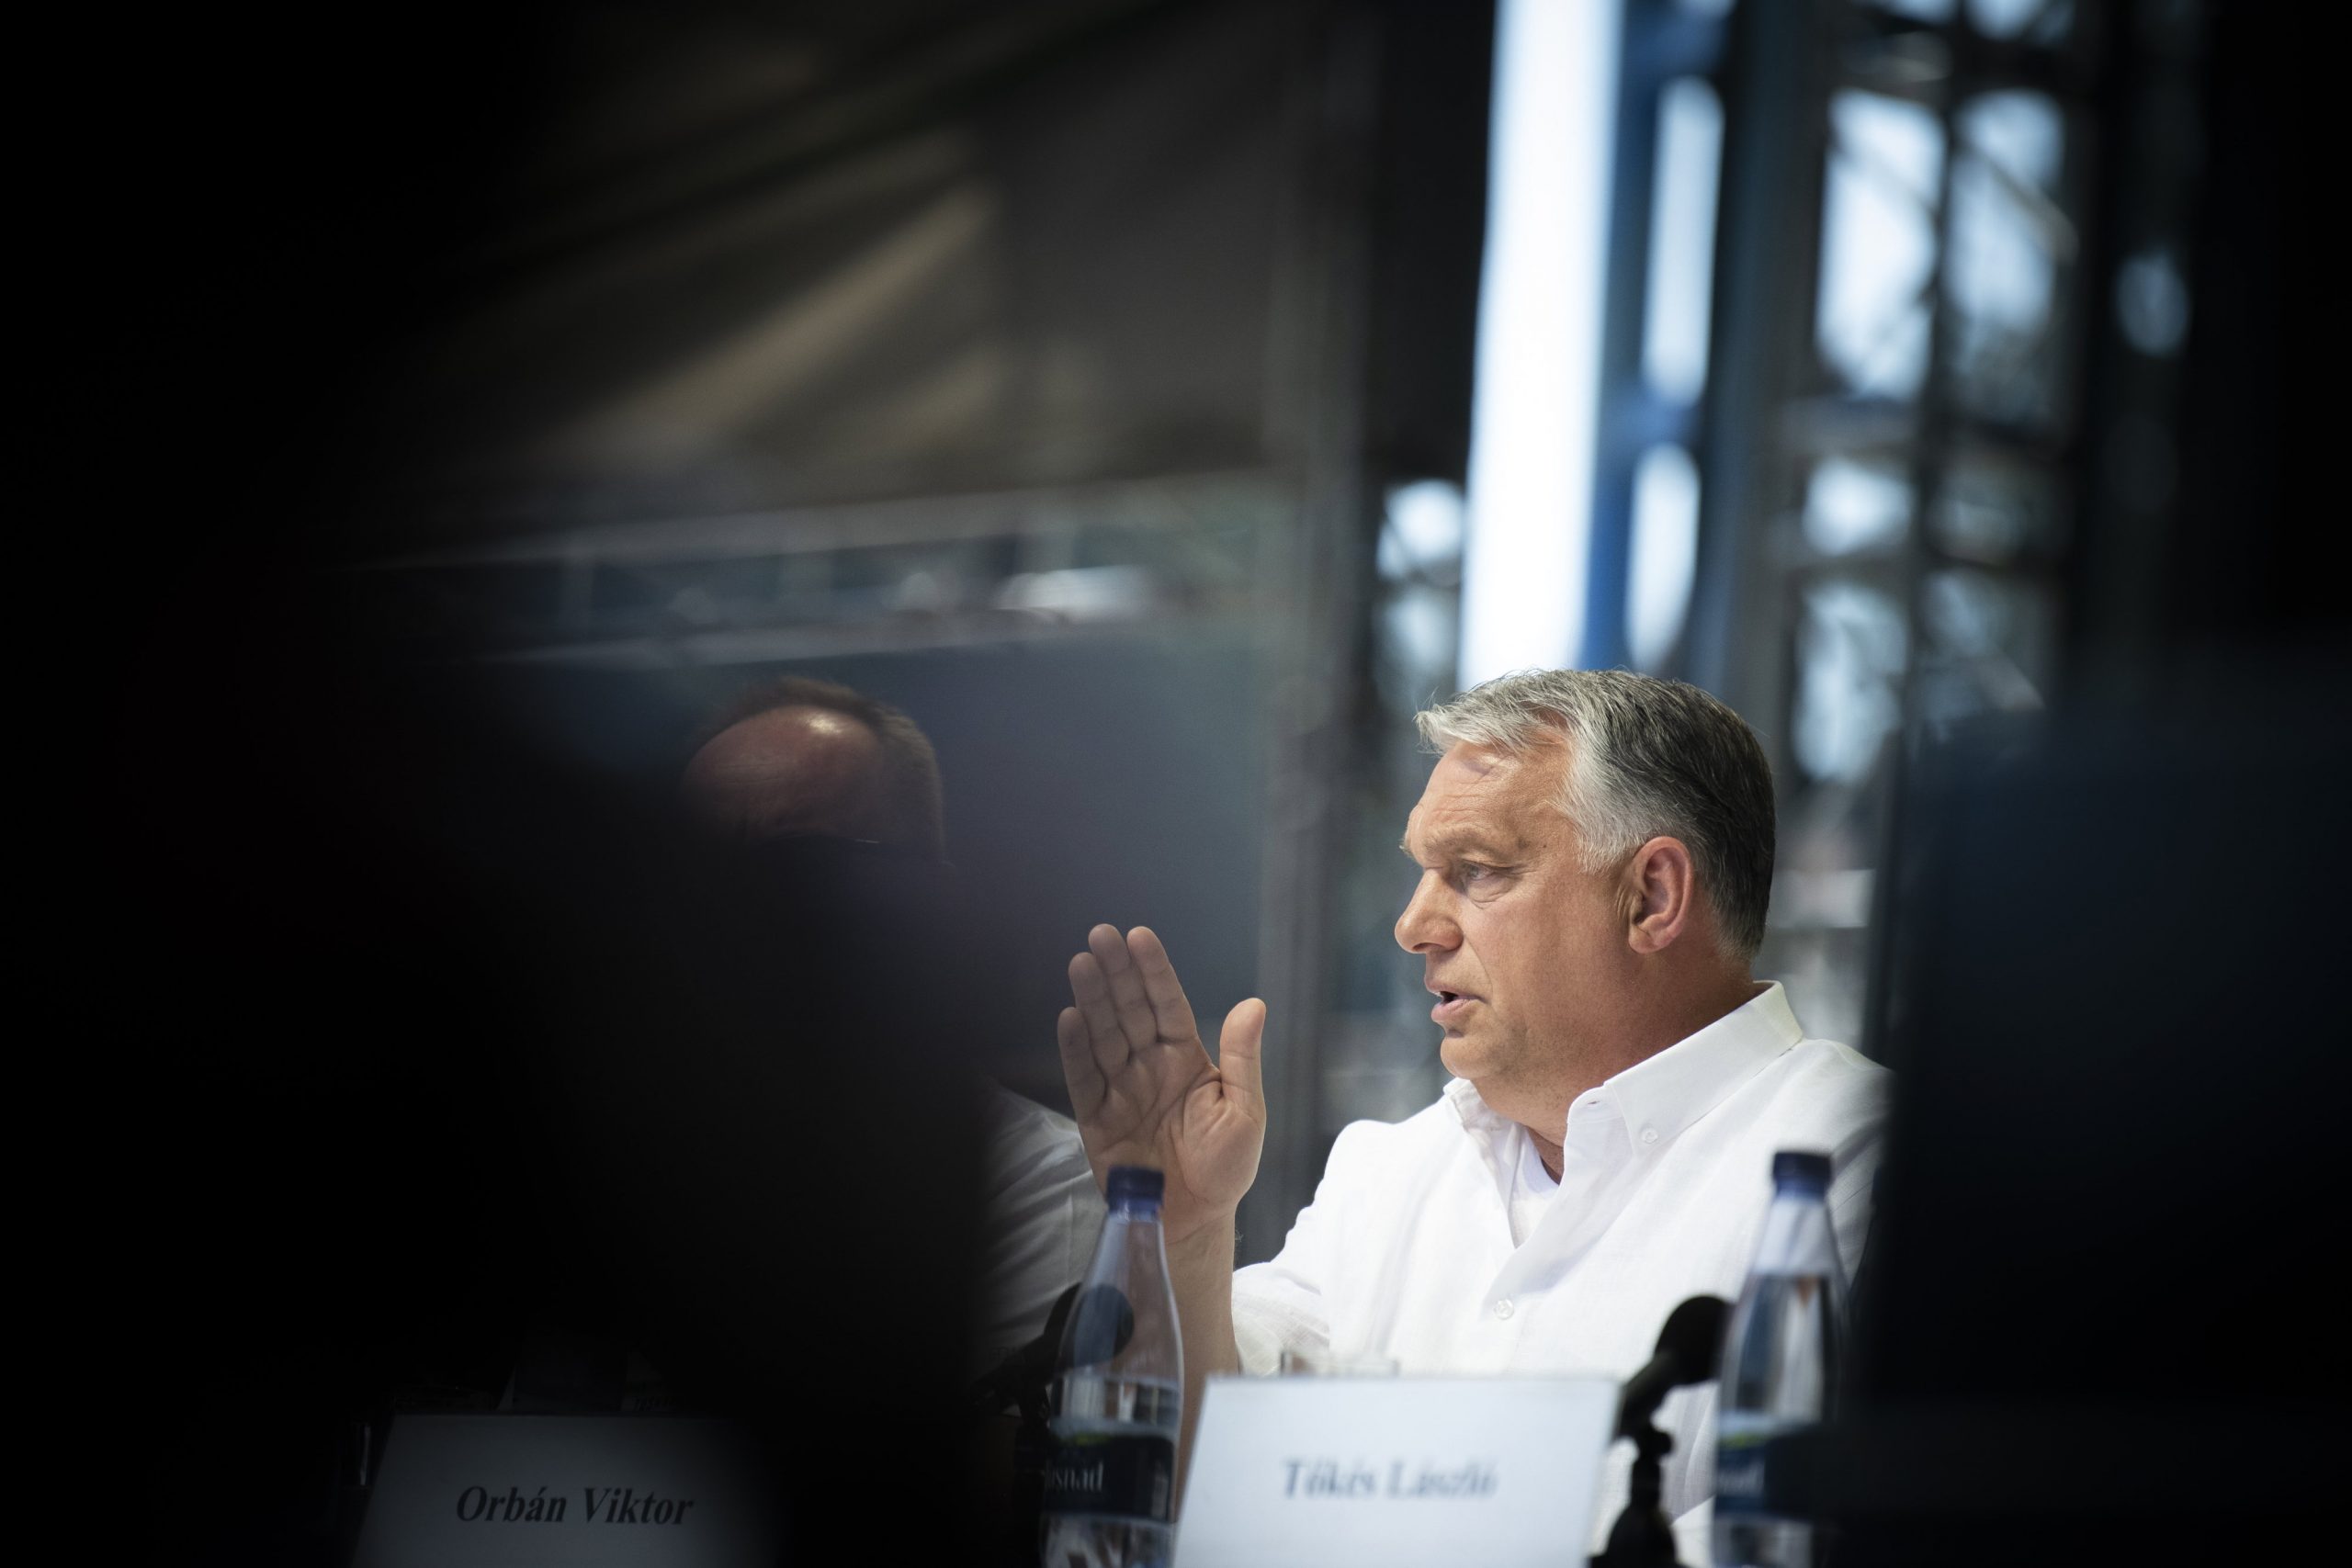 Viktor Orbán entwirft seine Vision für die Zukunft Ungarns in einem Jahrzehnt des Konflikts